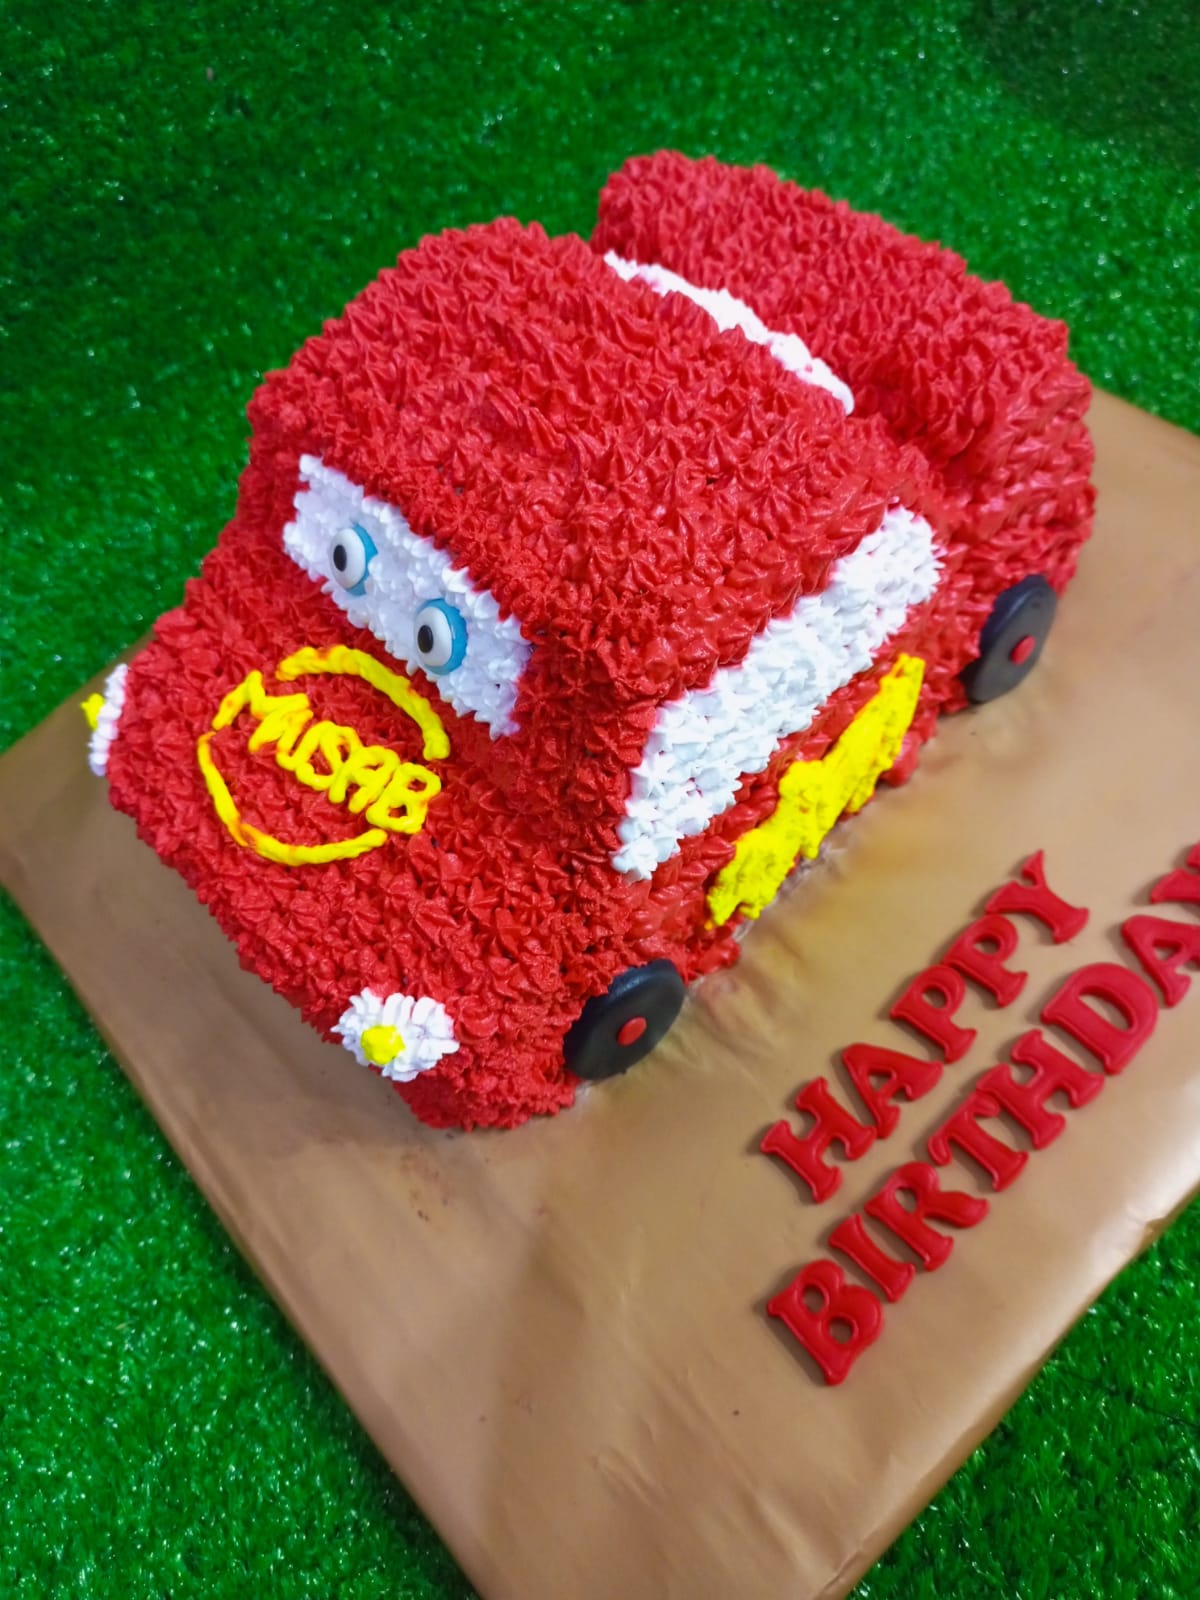 McQueen 3D car theme full cream cake